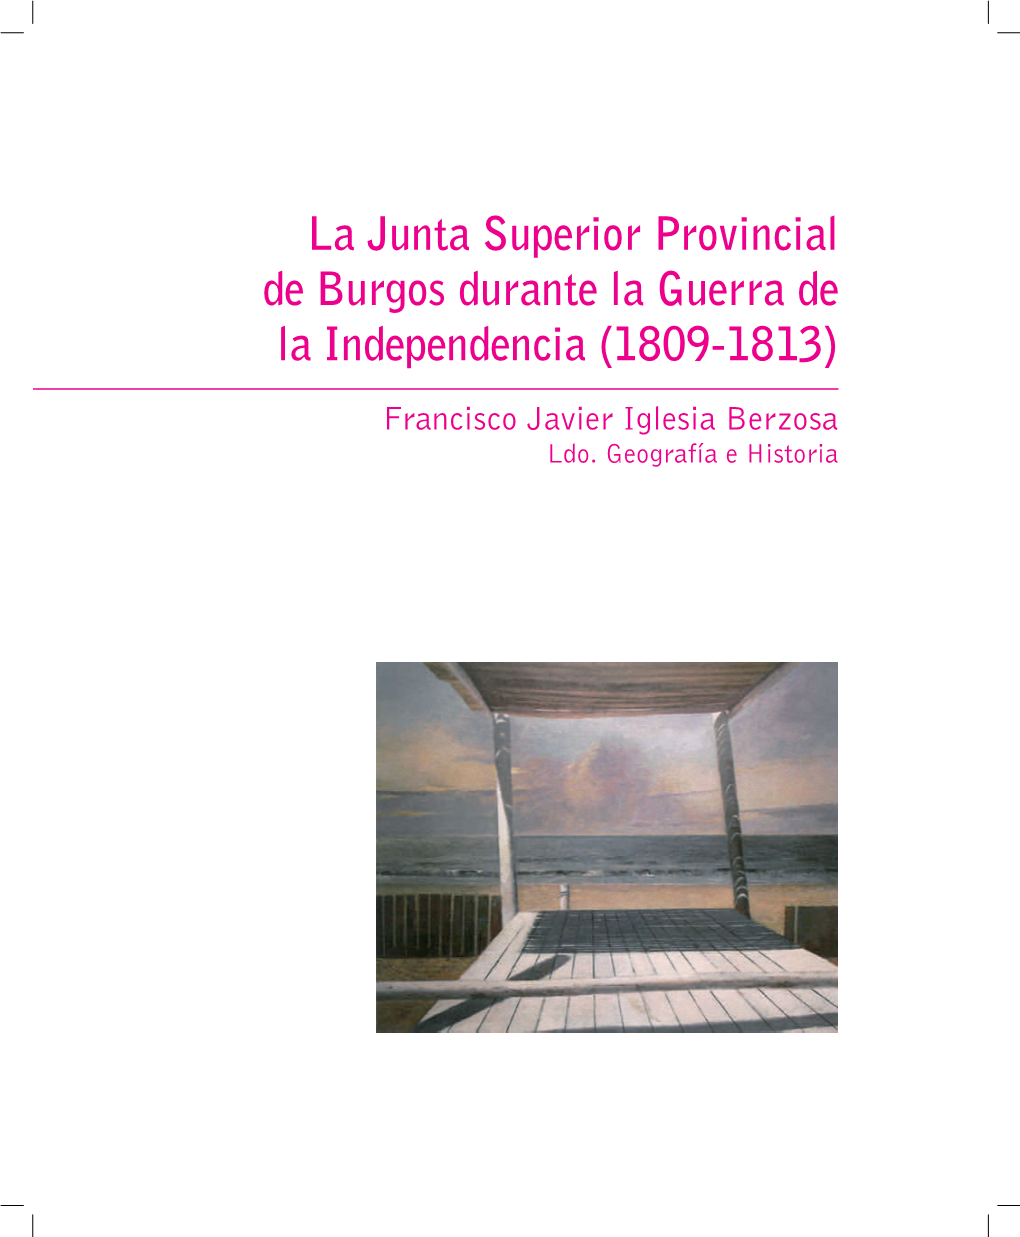 La Junta Superior Provincial De Burgos Durante La Guerra De La Independencia (1809-1813) Francisco Javier Iglesia Berzosa Ldo